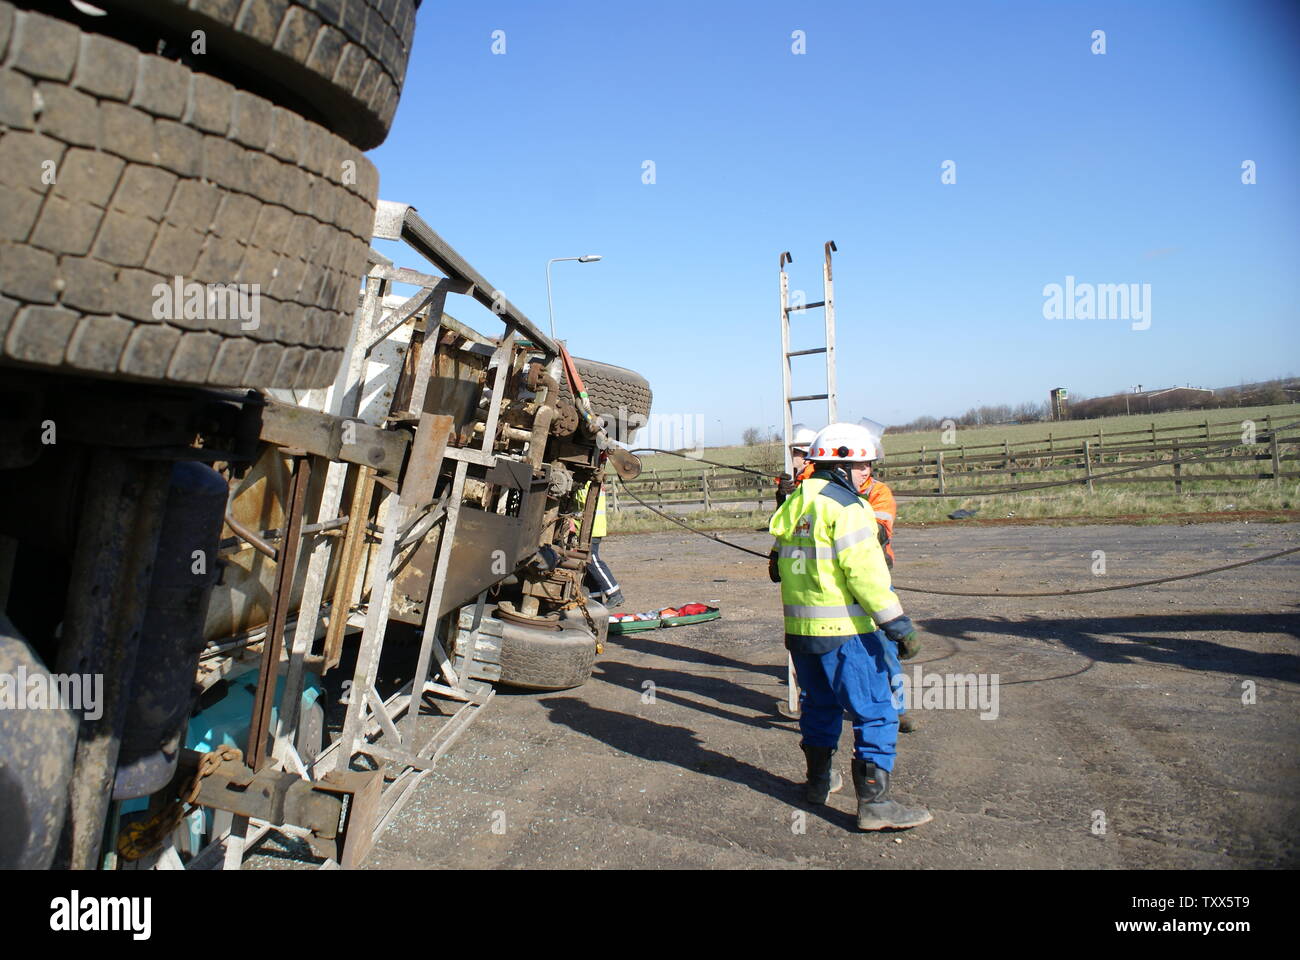 lorry crash, RTC Stock Photo